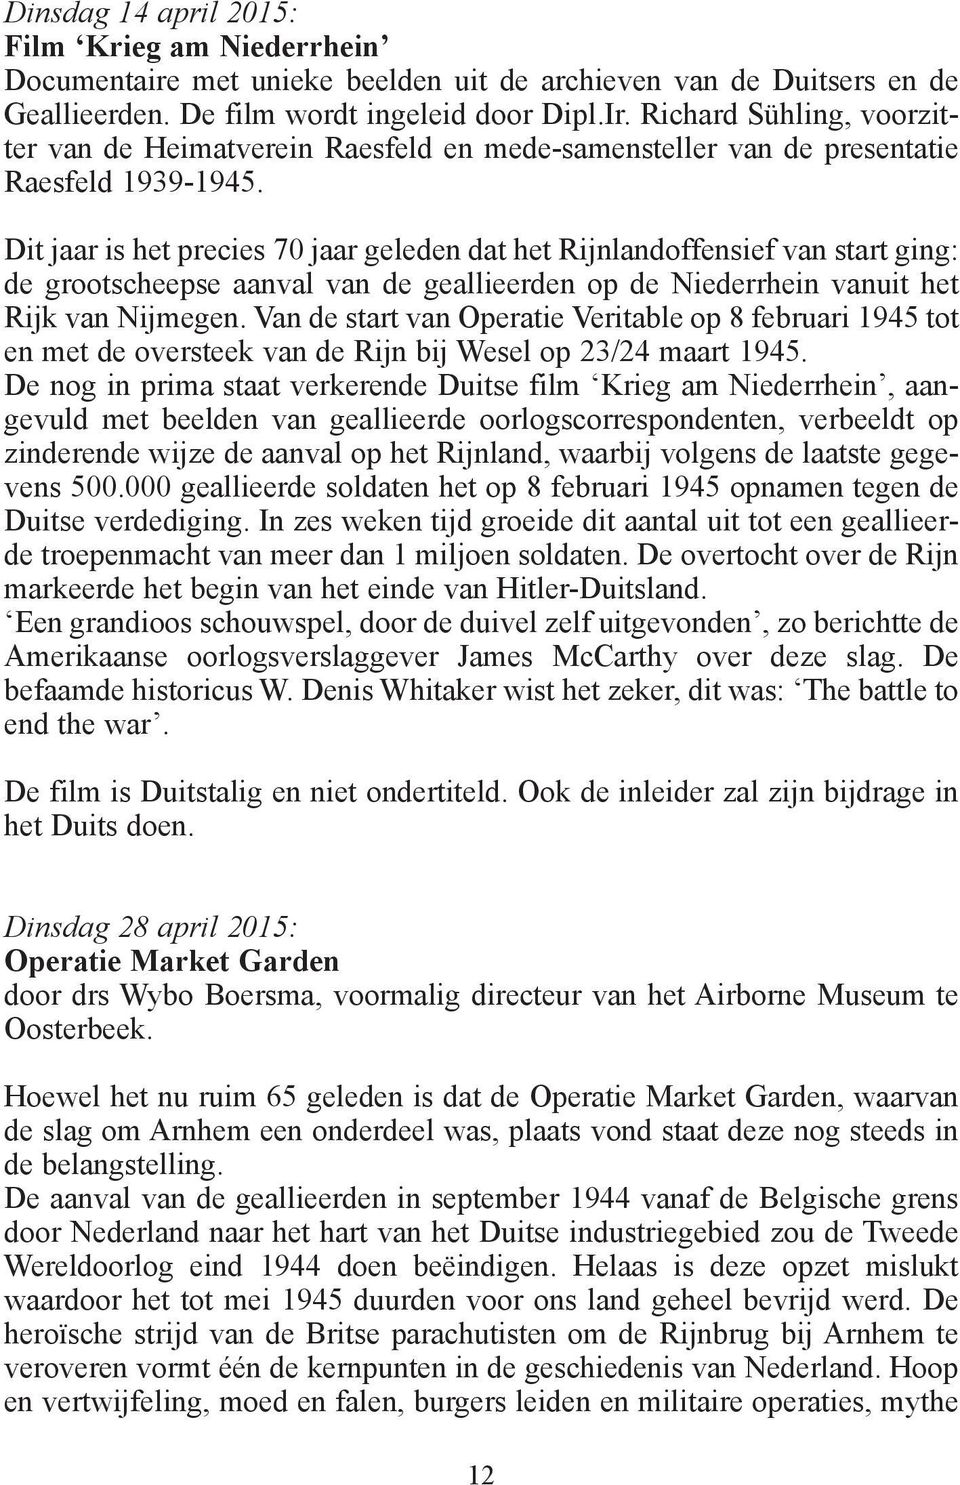 Dit jaar is het precies 70 jaar geleden dat het Rijnlandoffensief van start ging: de grootscheepse aanval van de geallieerden op de Niederrhein vanuit het Rijk van Nijmegen.